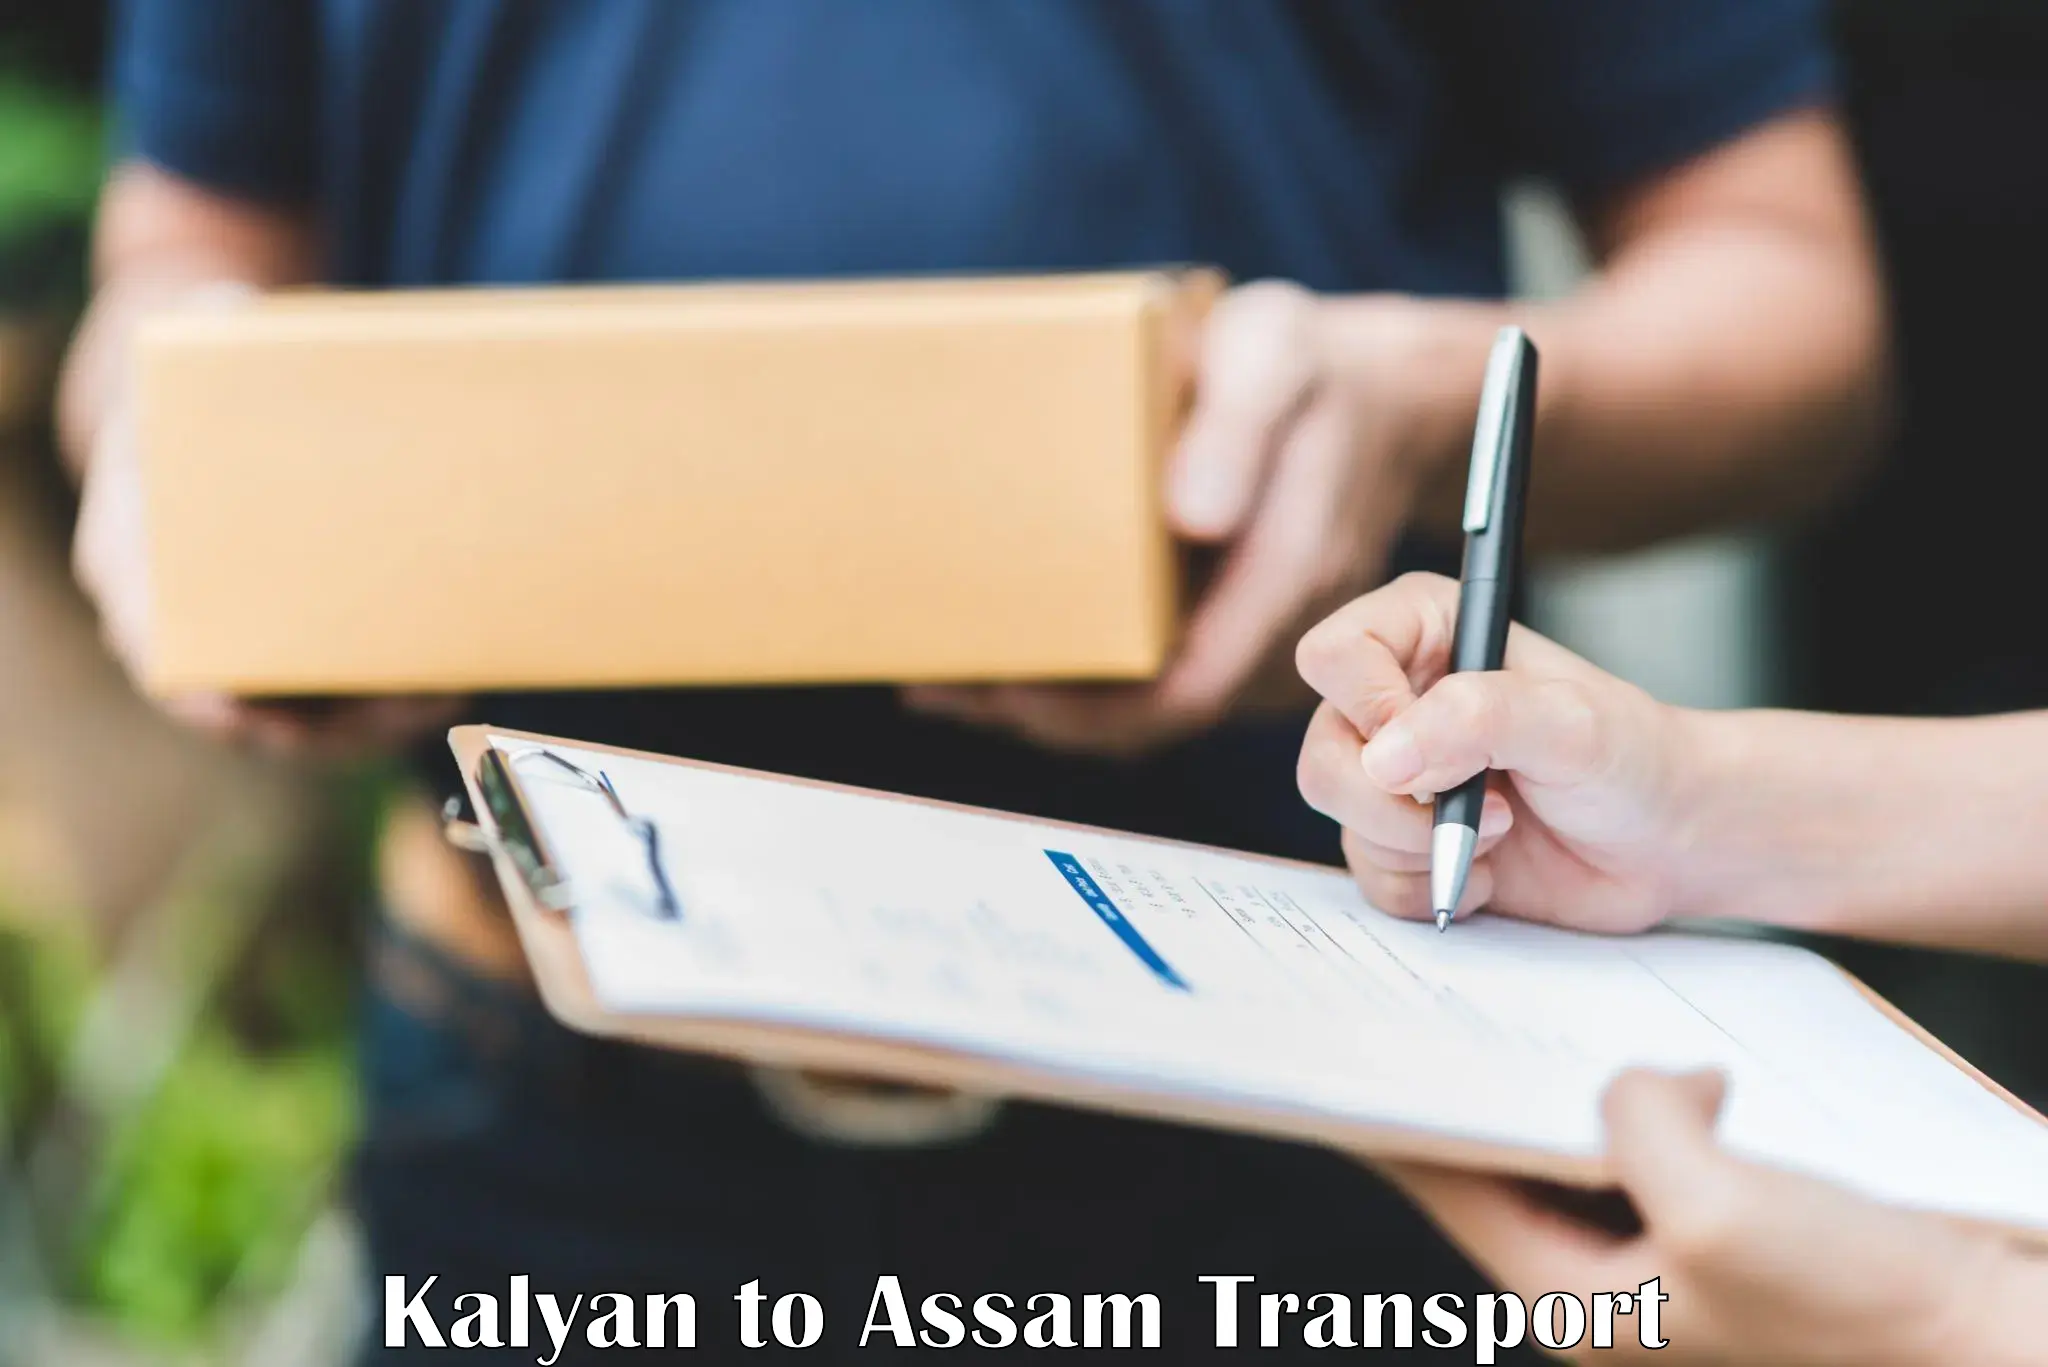 Two wheeler parcel service Kalyan to Hailakandi